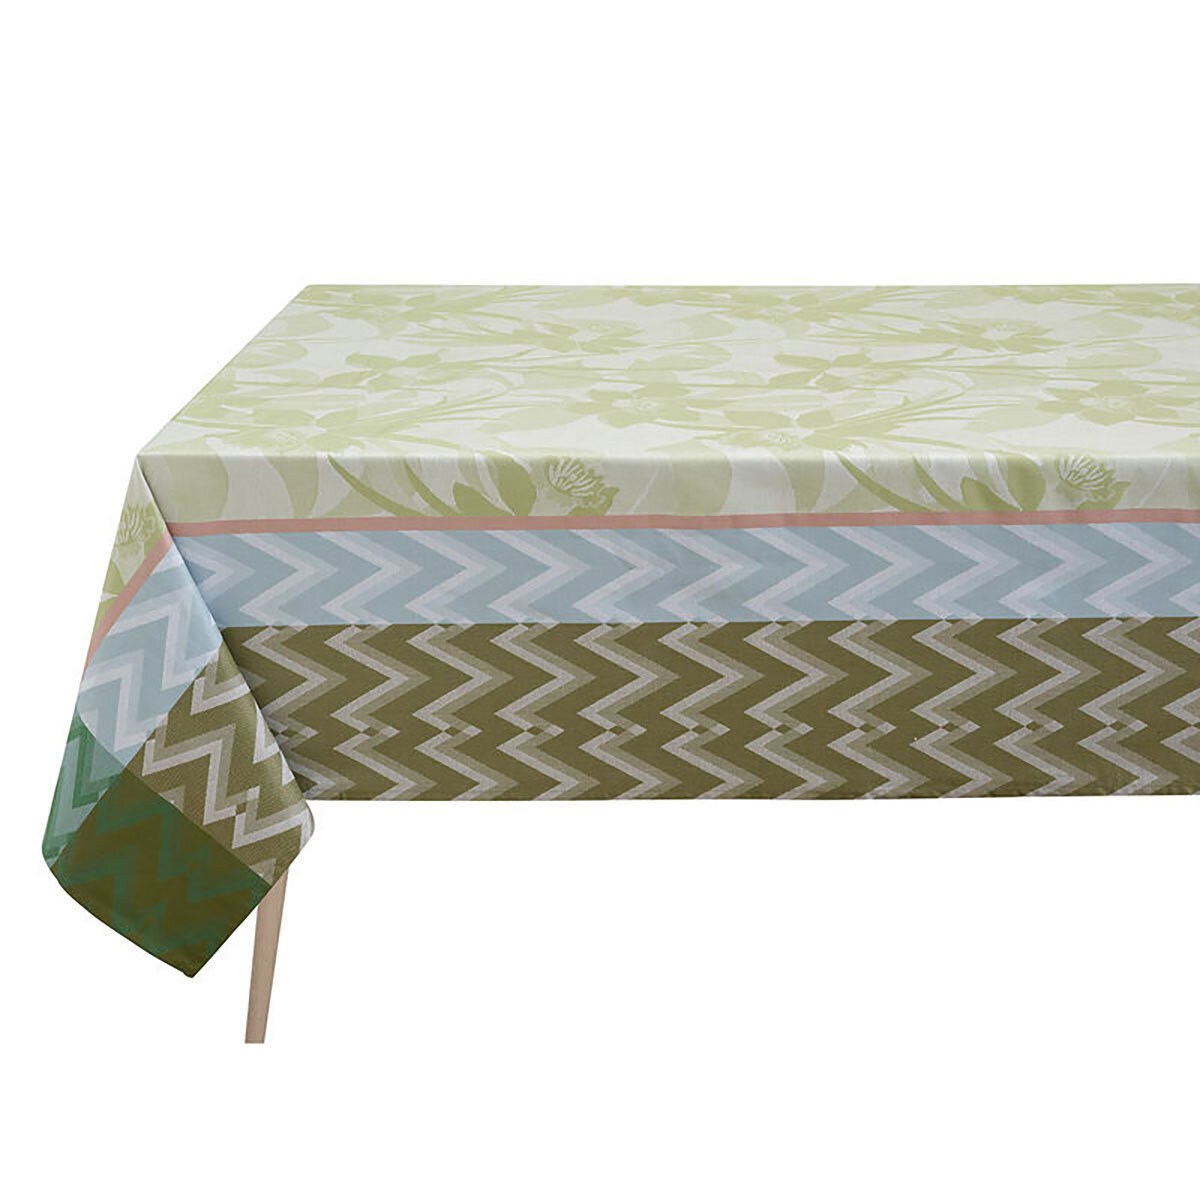 Le Jacquard Francais La Vie En Vosges Green Coated Tablecloth 69 x 126 Inch 27486